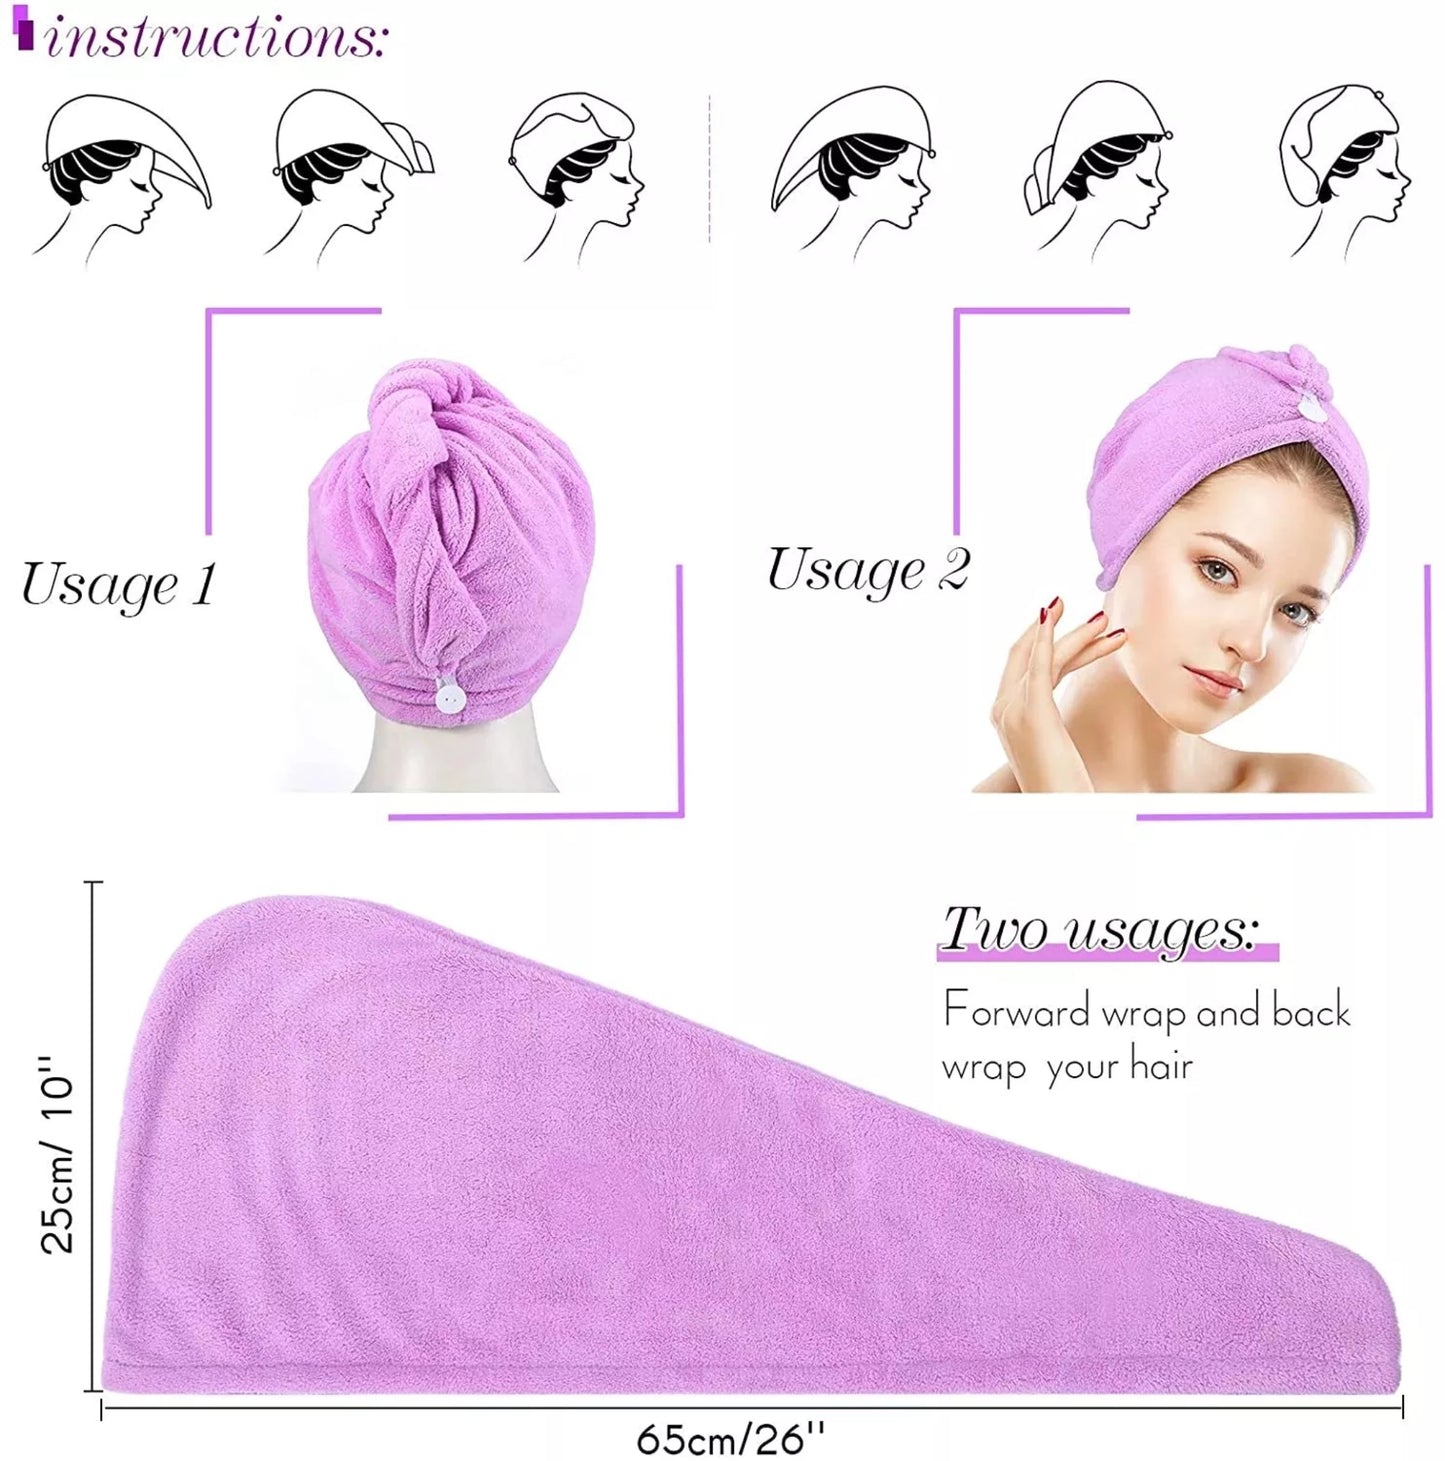 Absorbent quick-drying fleece microfiber hair towel